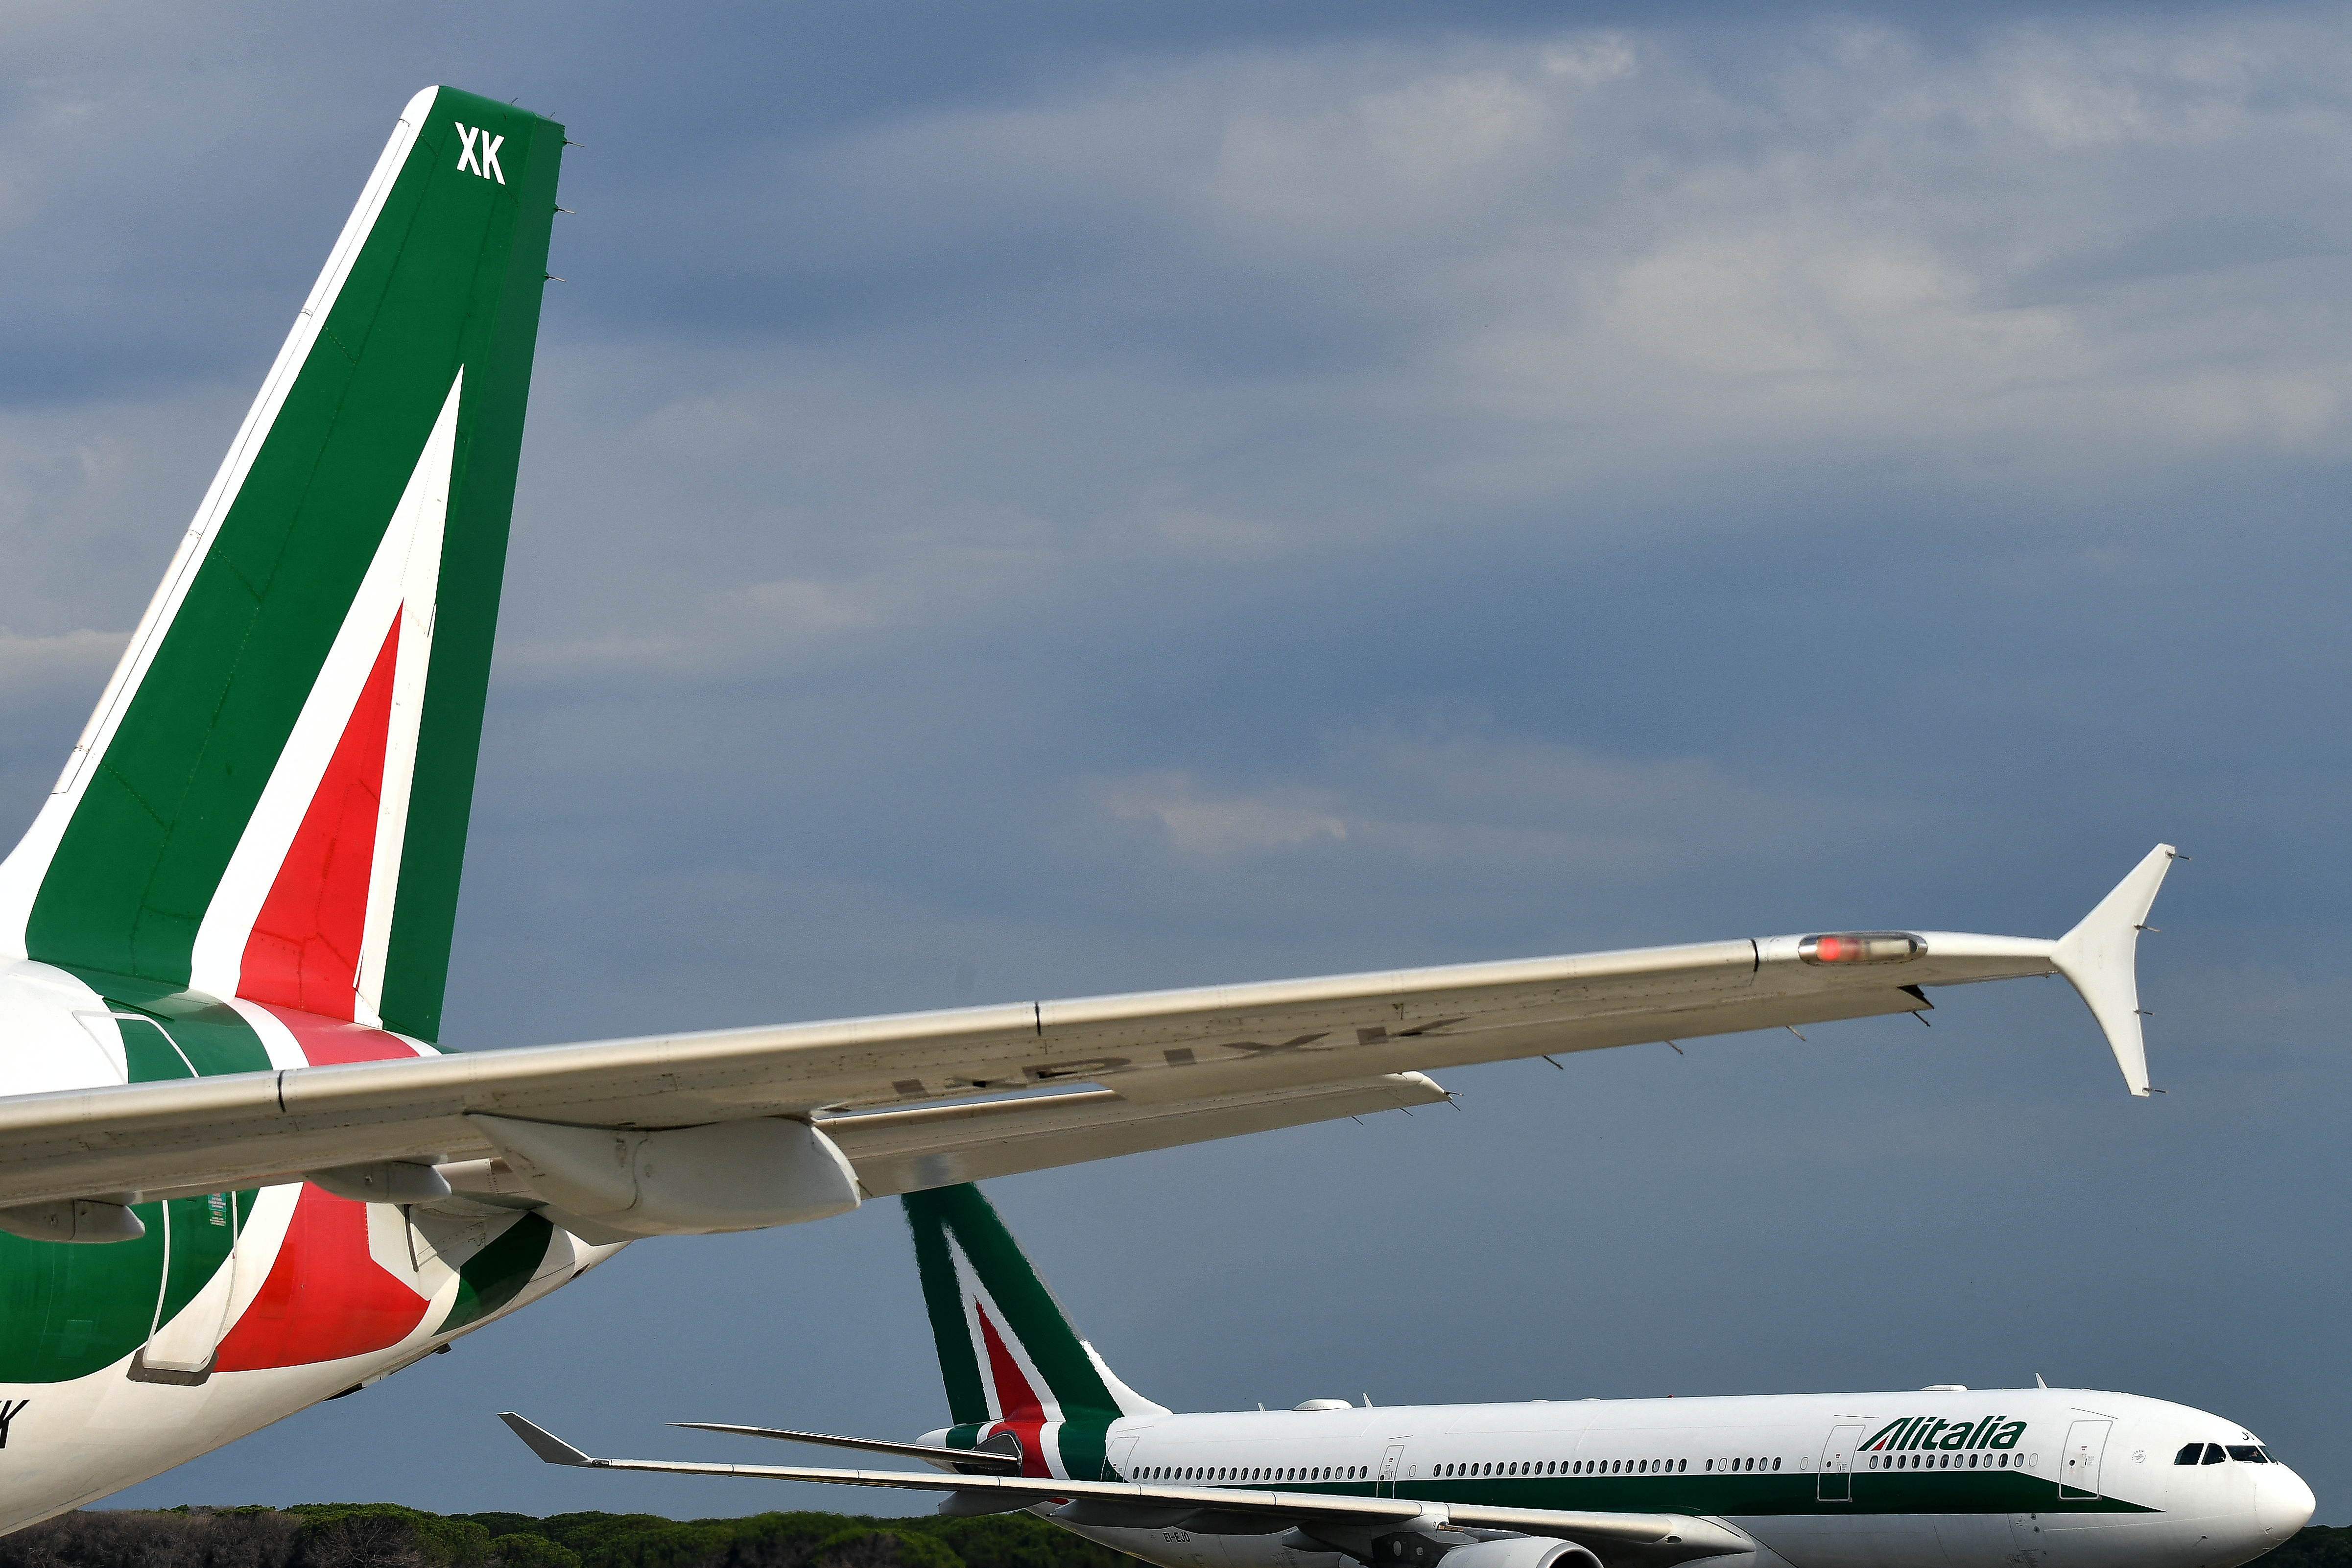 Dernier vol pour Alitalia